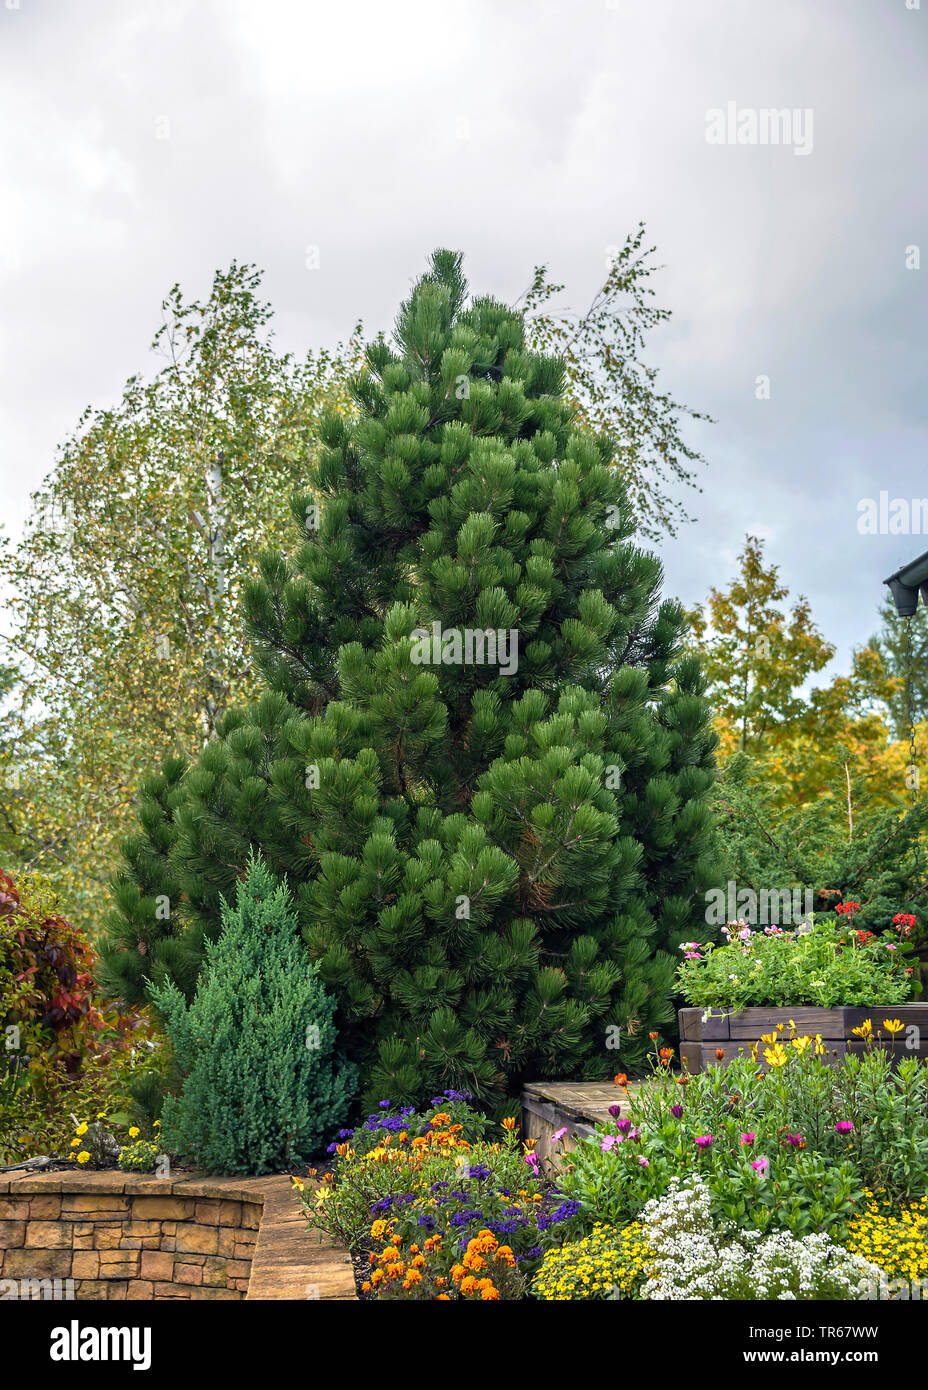 Bosnische Kiefer, Palebark Kiefer (Pinus heldreichii 'Compact Juwel", Pinus heldreichii Compact Juwel), Sorte Compact Juwel in einem Garten, Deutschland Stockfoto